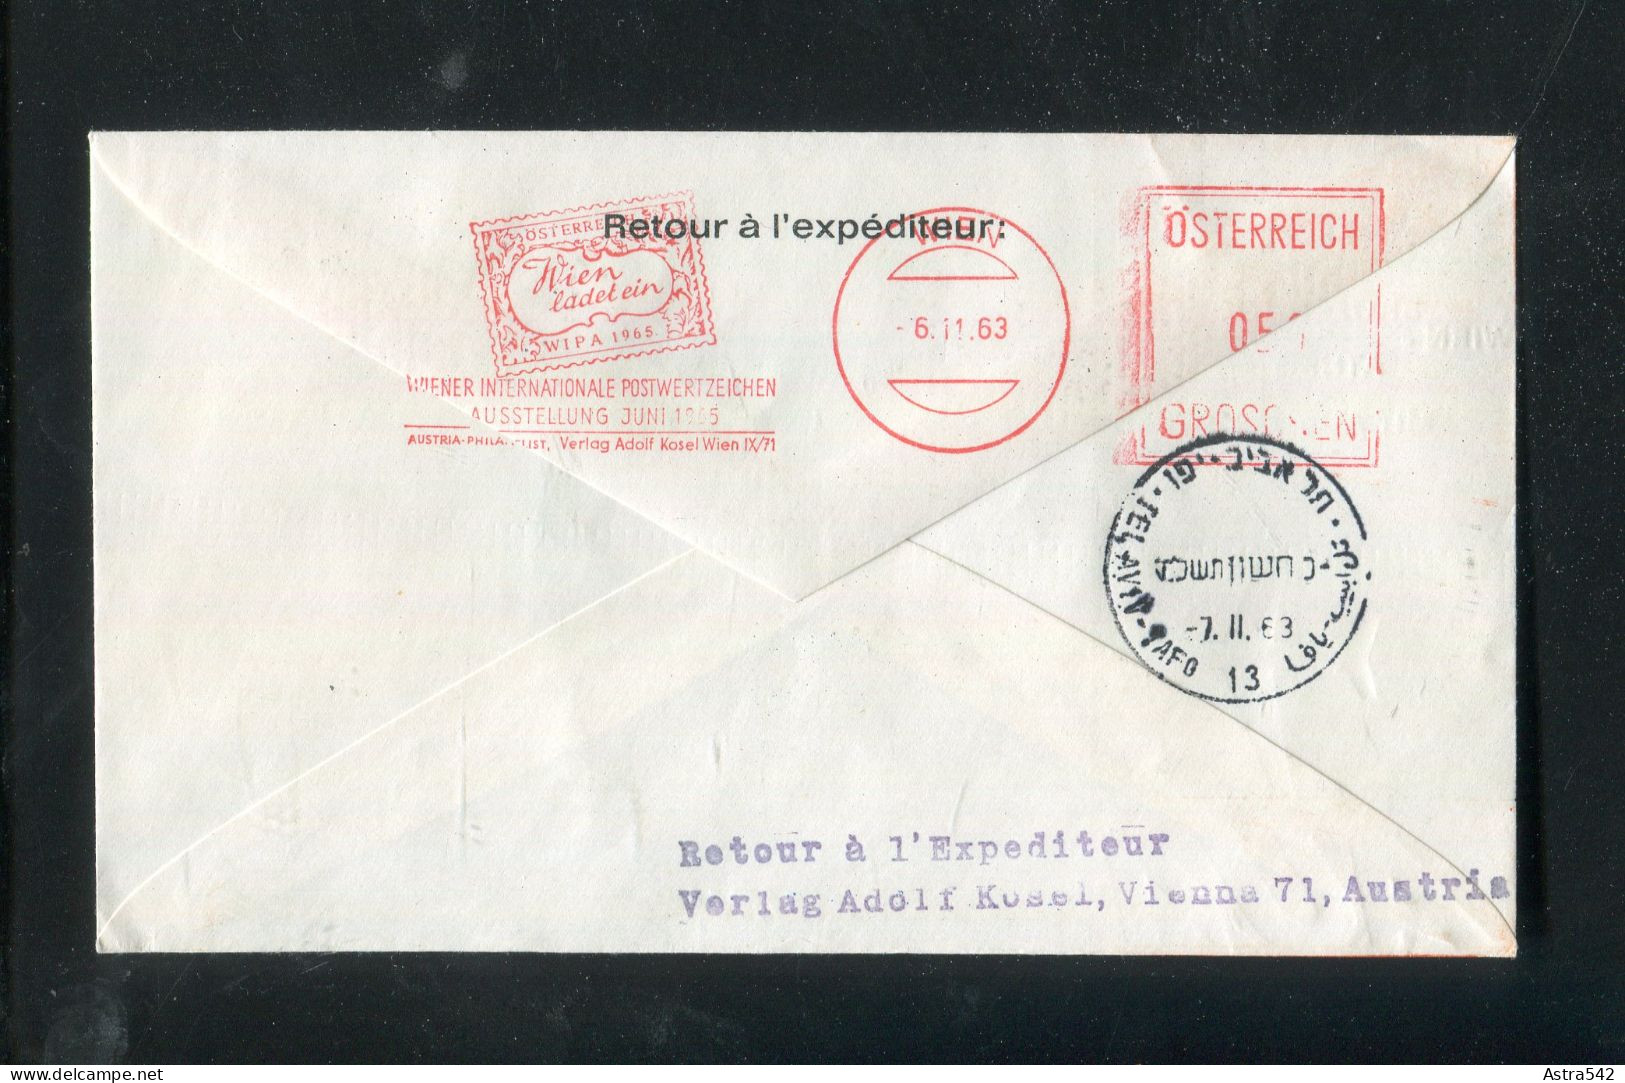 "OESTERREICH" 1963, AUA-Caravelle-Erstflugbrief "Wien-Tel Aviv" (5294) - Primi Voli